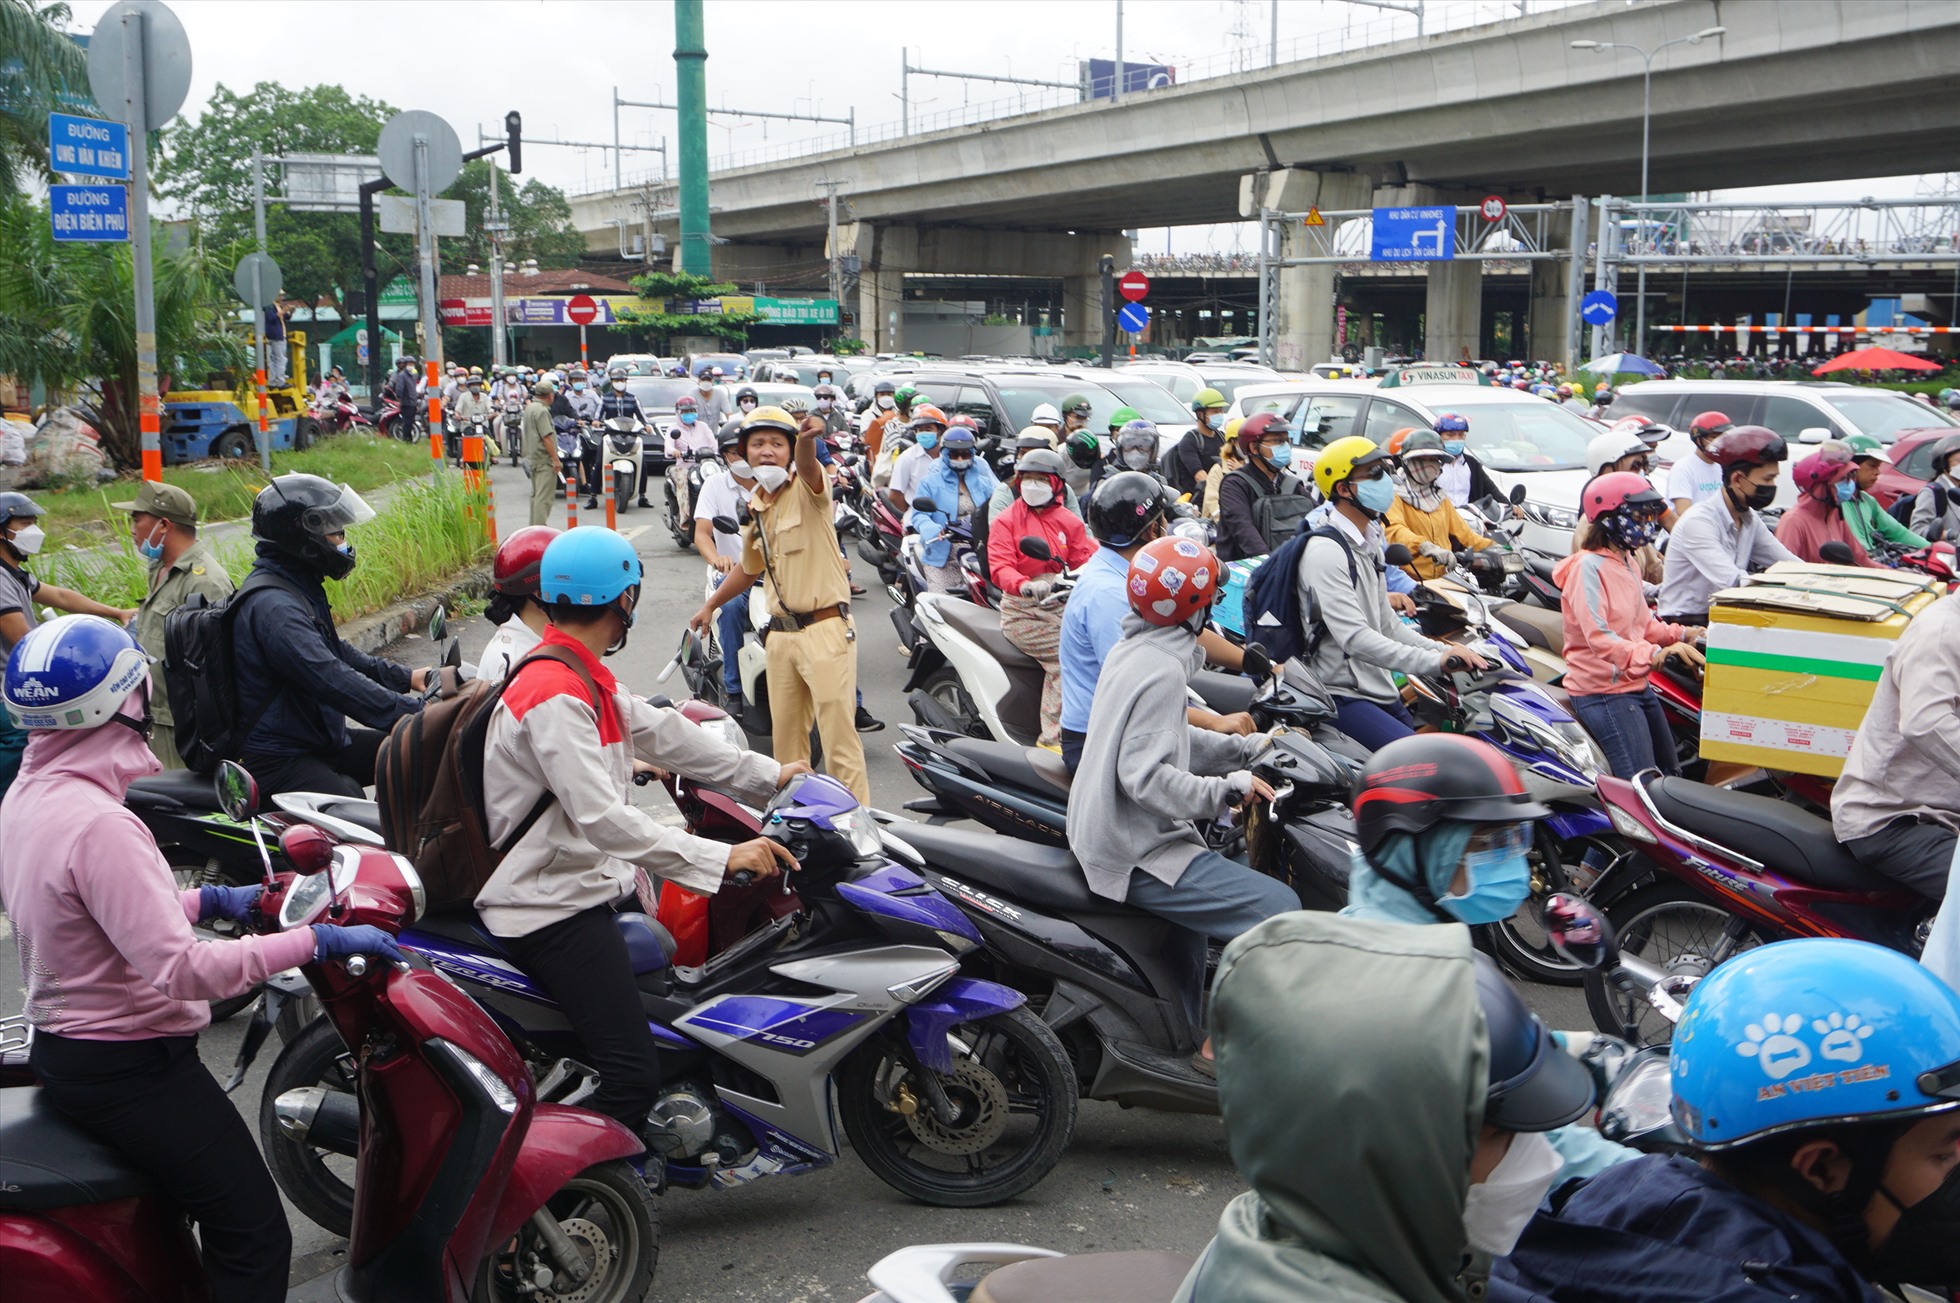 Trong sáng nay rất đông các lực lượng CSGT và bảo vệ khu phố đã có mặt từ sớm để phân luồng, nhưng trong ngày đầu thực hiện việc cấm xe lên cầu vượt Nguyễn Hữu Cảnh, khu vực dạ cầu Sài Gòn kẹt cứng xe cố từ 7h30 – 9h30.